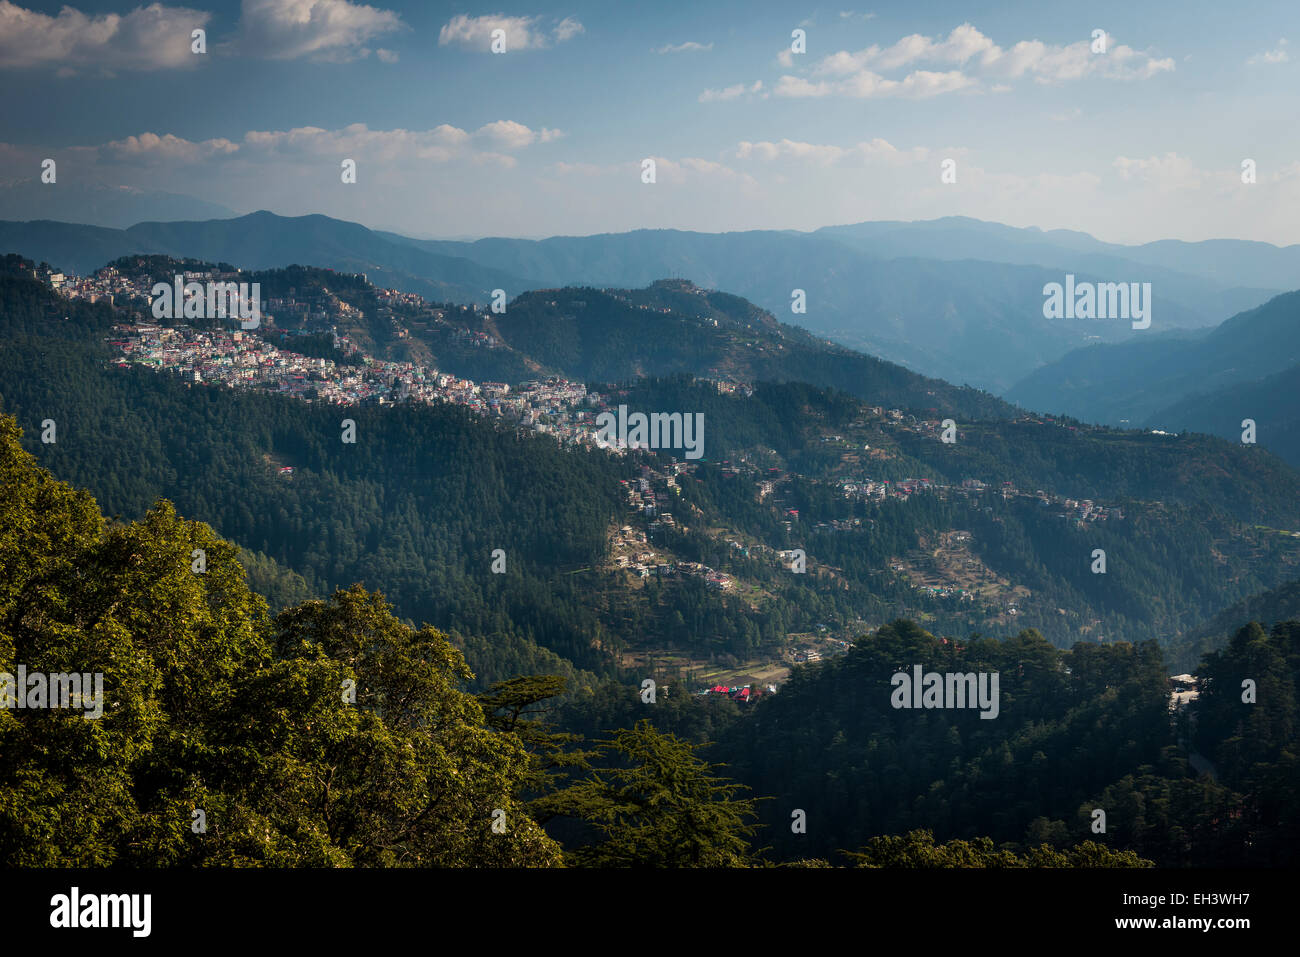 Vue sur les quartiers périphériques de Shimla au pied des collines de l'Himachal Pradesh, Inde Banque D'Images